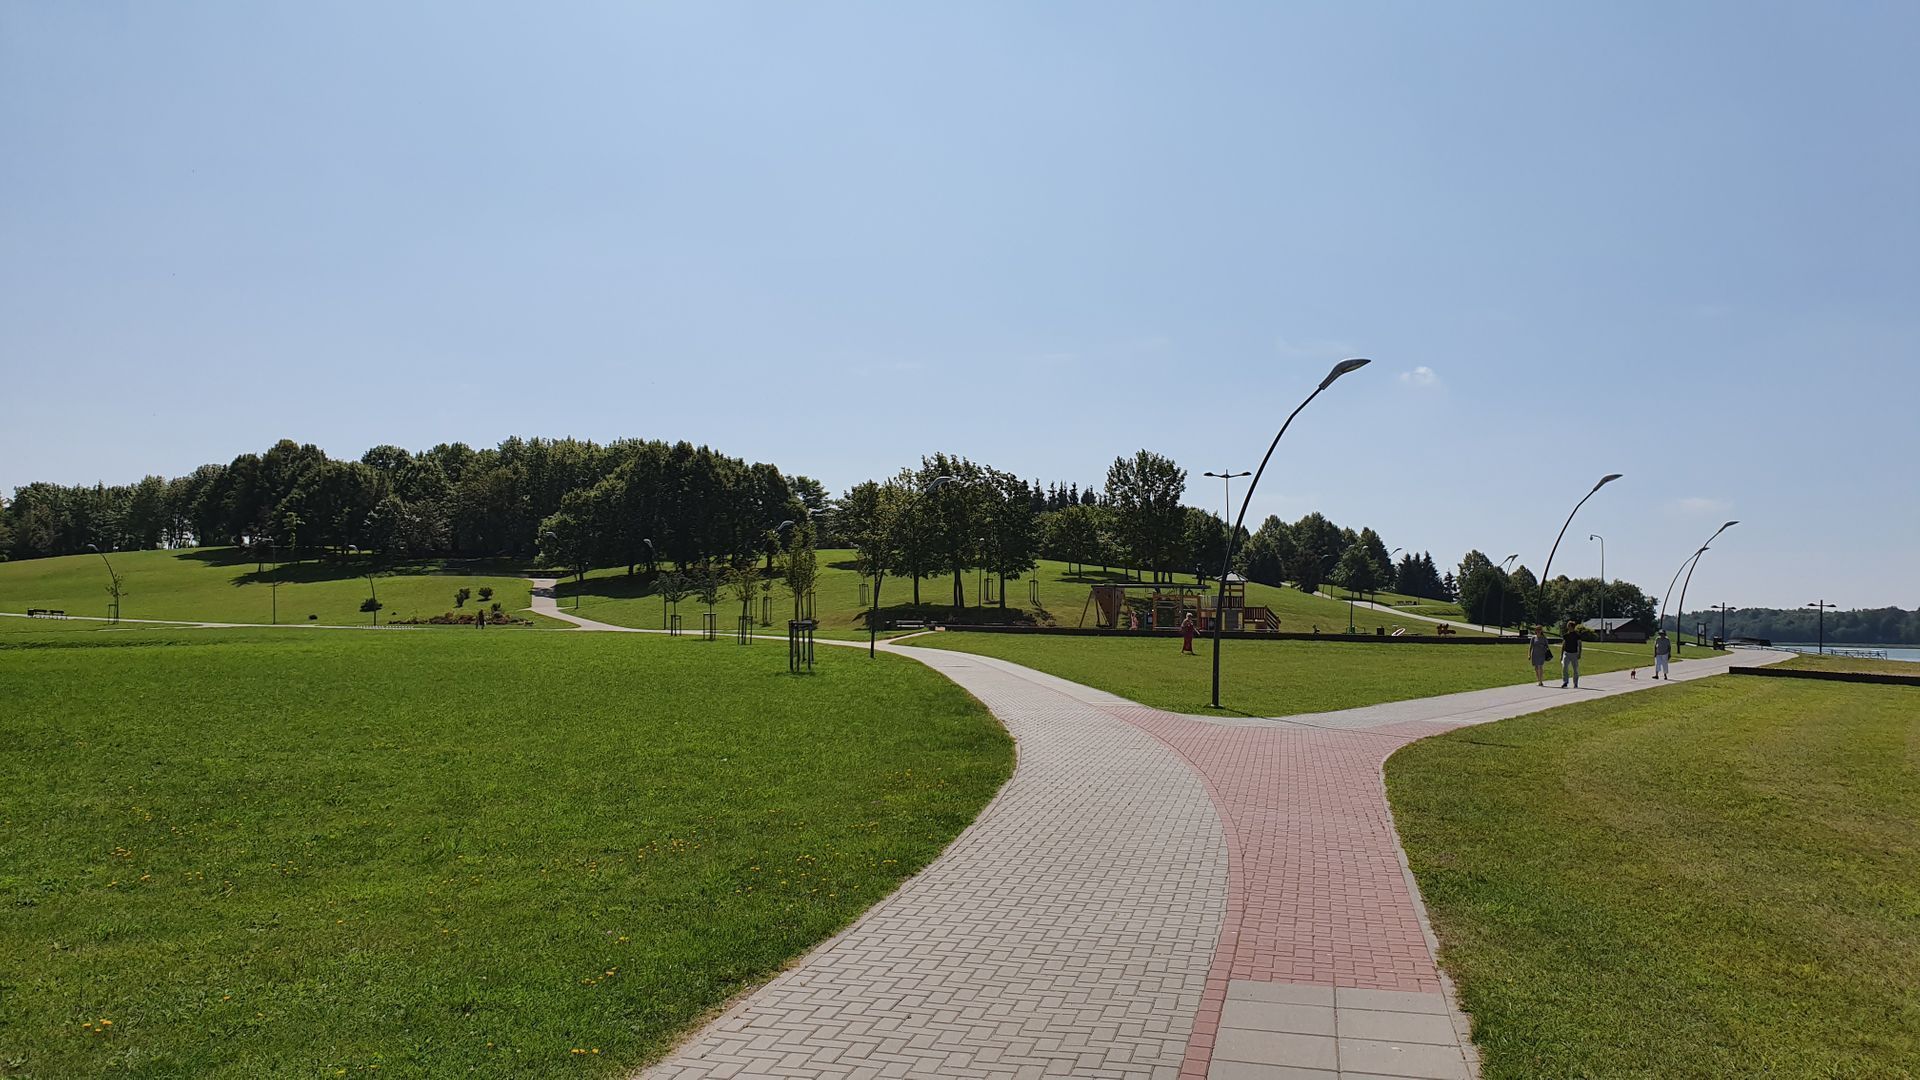 Telšiai Culture Park